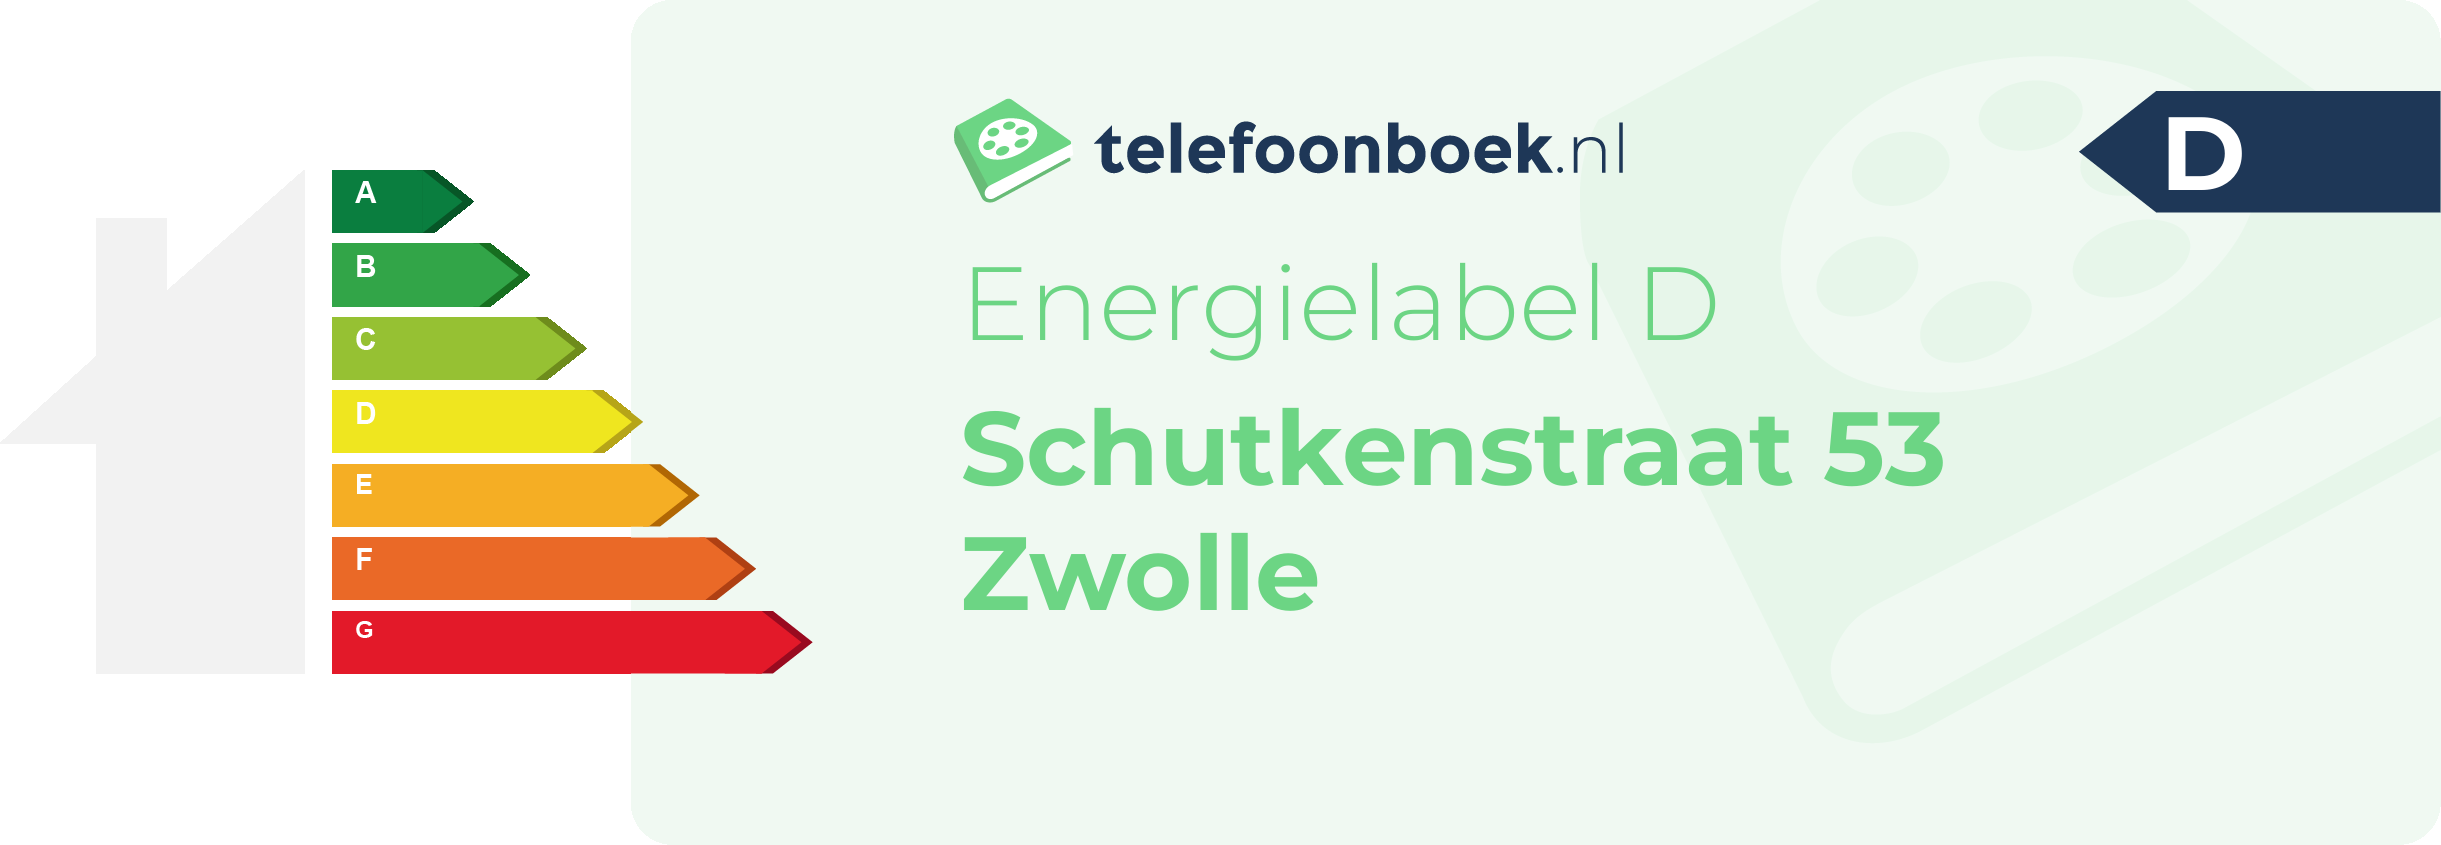 Energielabel Schutkenstraat 53 Zwolle